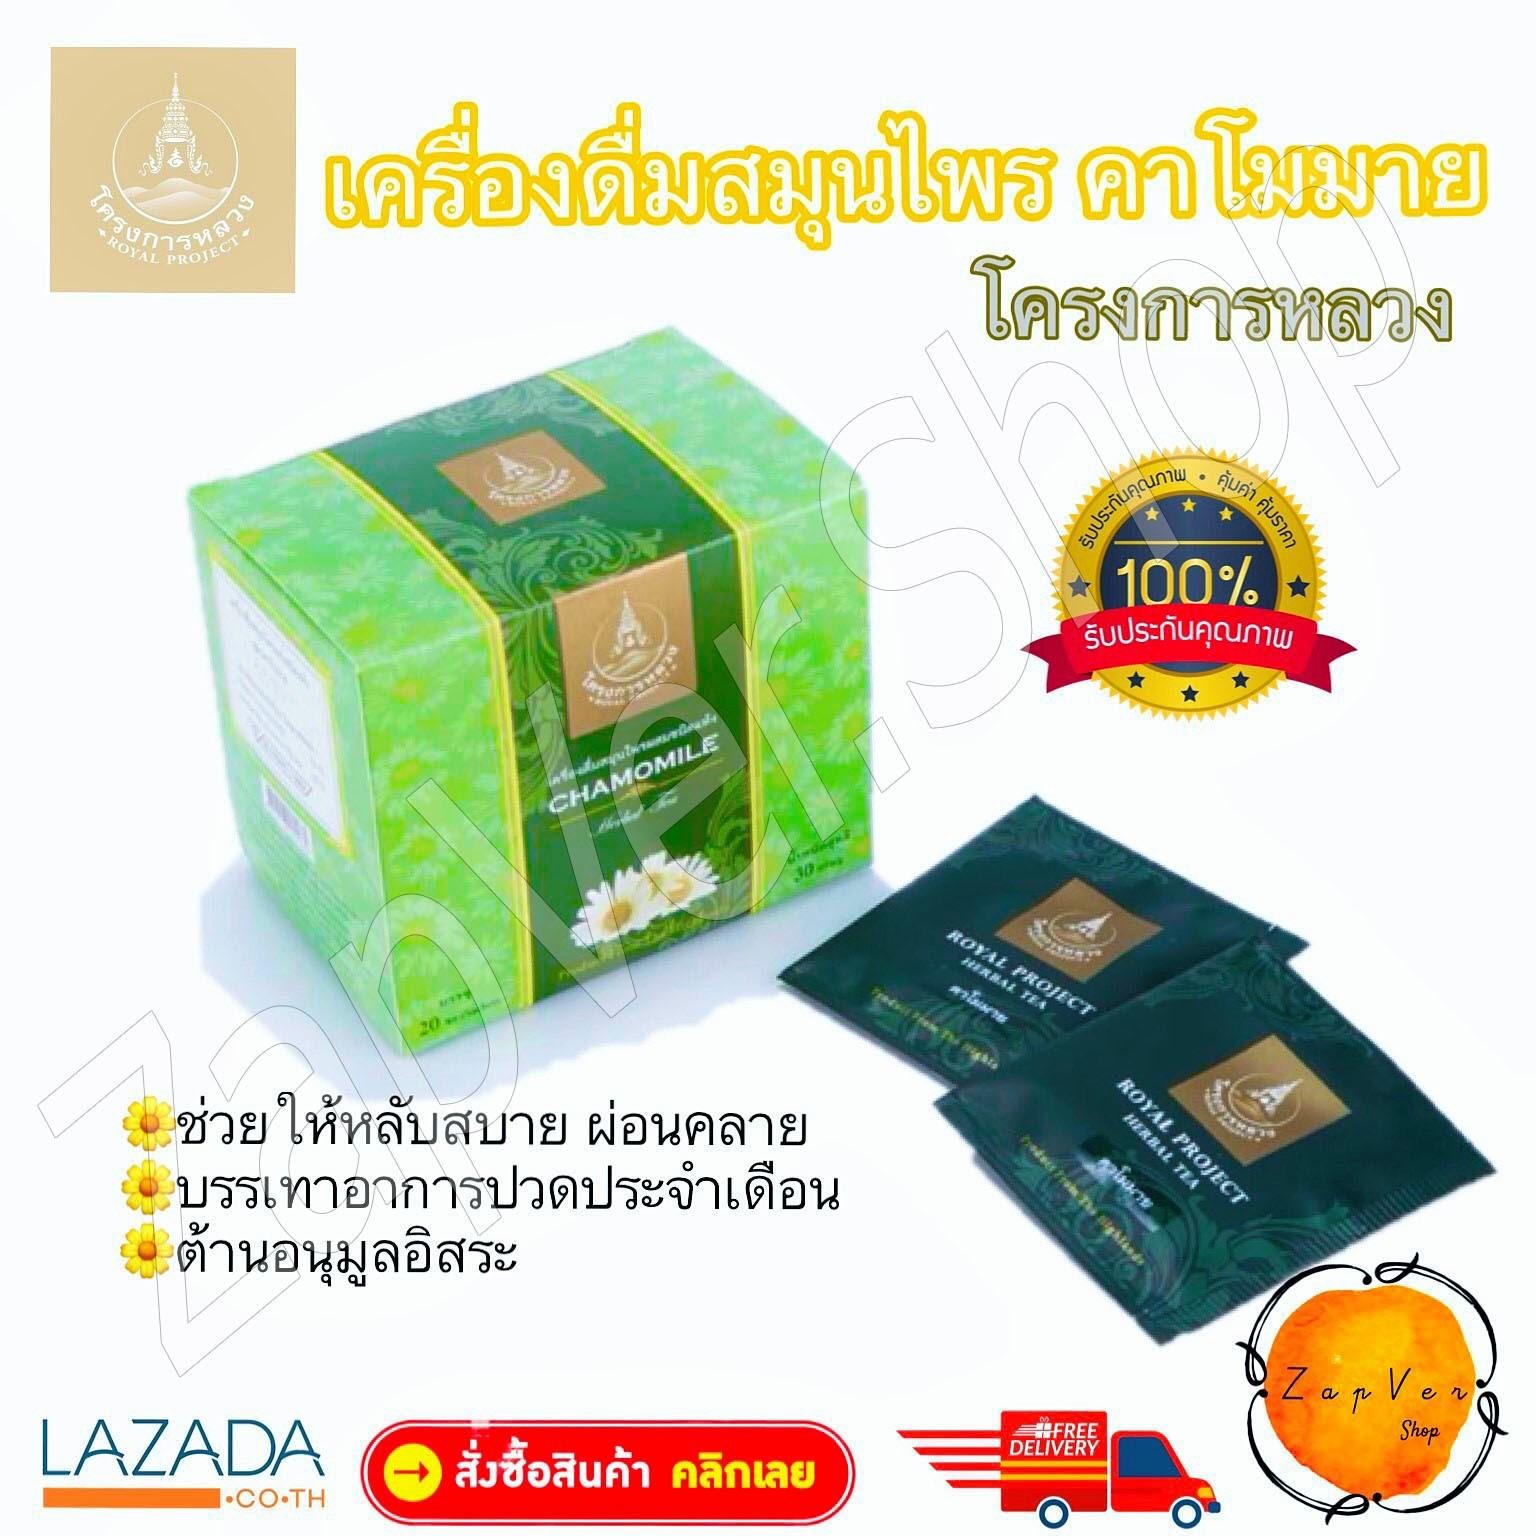 ชา เครื่องดื่ม พร้อมชง ชาสมุนไพร คาโมมาย ชาร้อน คาโมมายล์  โครงการหลวง เครื่องดื่มสมุนไพร สูตรคาโมมายล์ แบบกล่อง บรรจุถุงชาสำเร็จ  ชาสมุนไพร ดอกคาโมมายอบแห้ง  camomile tea Product of Royal Project Foundation  Thailand